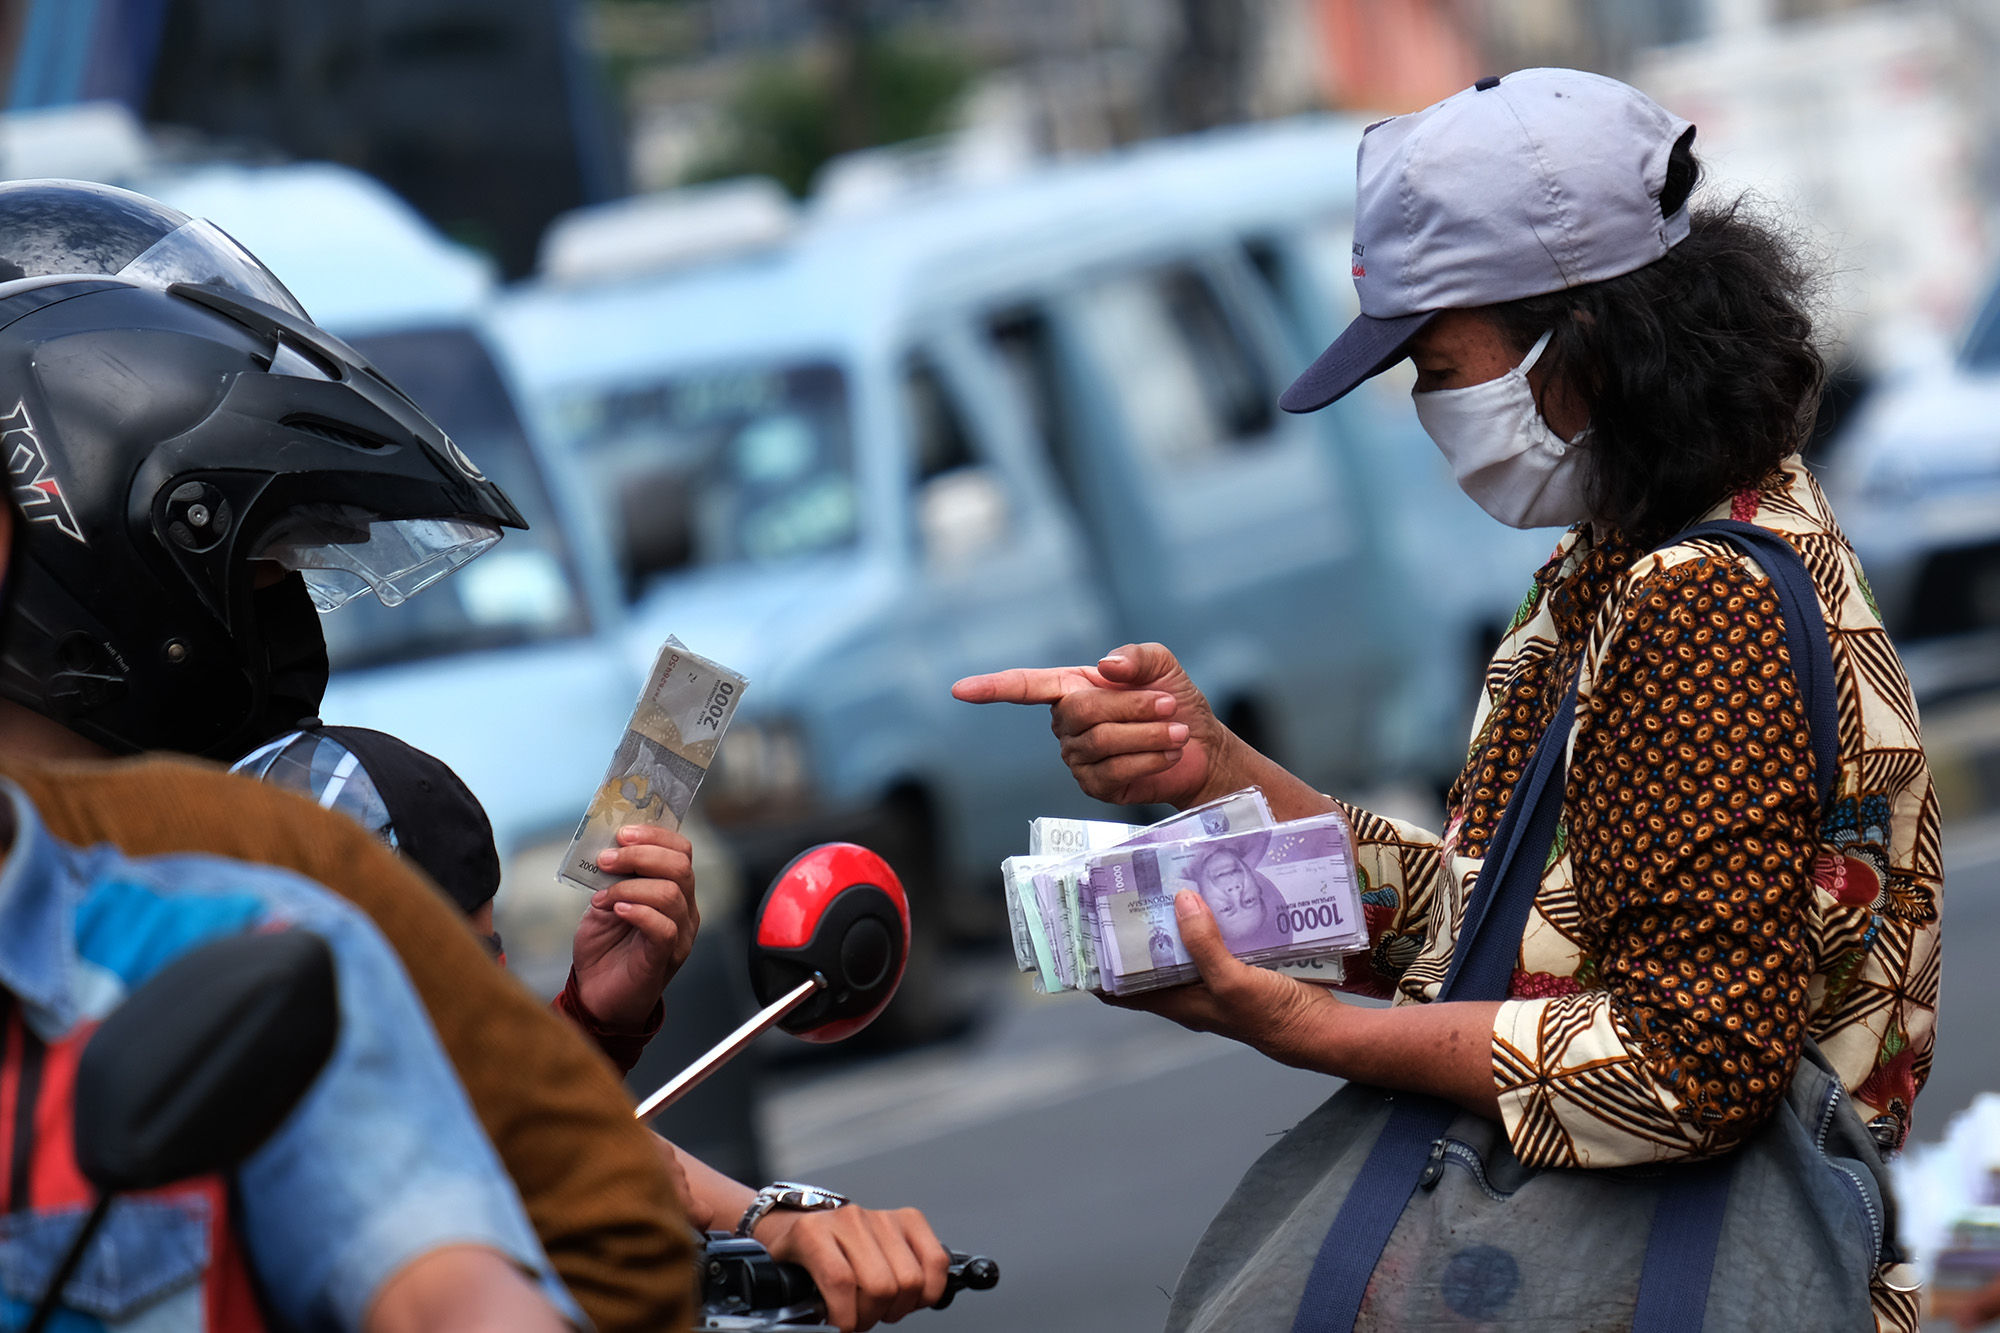 <p>Penjual jasa penukaran uang melayani konsumen di kawasan Kota Tua, Jakarta Barat, Sabtu 23 Mei 2020. Memasuki H-1 lebaran, warga masih banyak menggunakan jasa penukaran uang di pinggir jalan tersebut guna mendapatkan uang kertas baru pecahan Rp1.000 hingga Rp20.000, dengan biaya jasa sebesar Rp5000. Foto: Ismail Pohan/TrenAsia</p>
